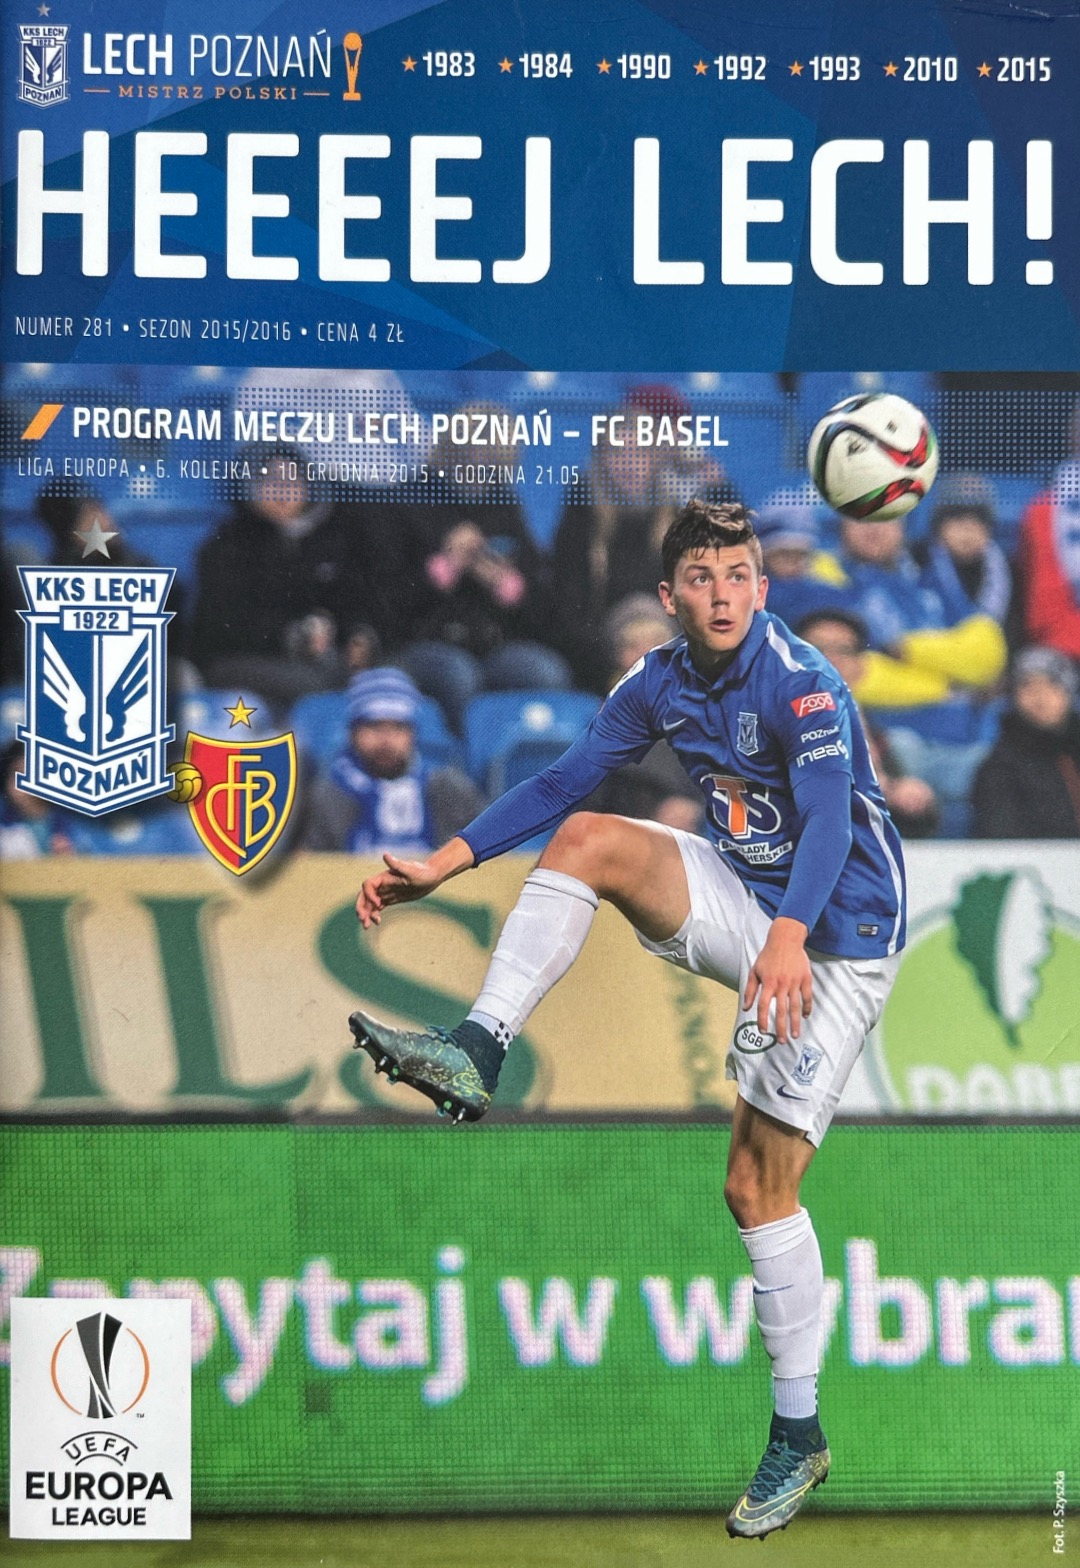 Program meczowy Lech Poznań - FC Basel 0:1 (10.12.2015)